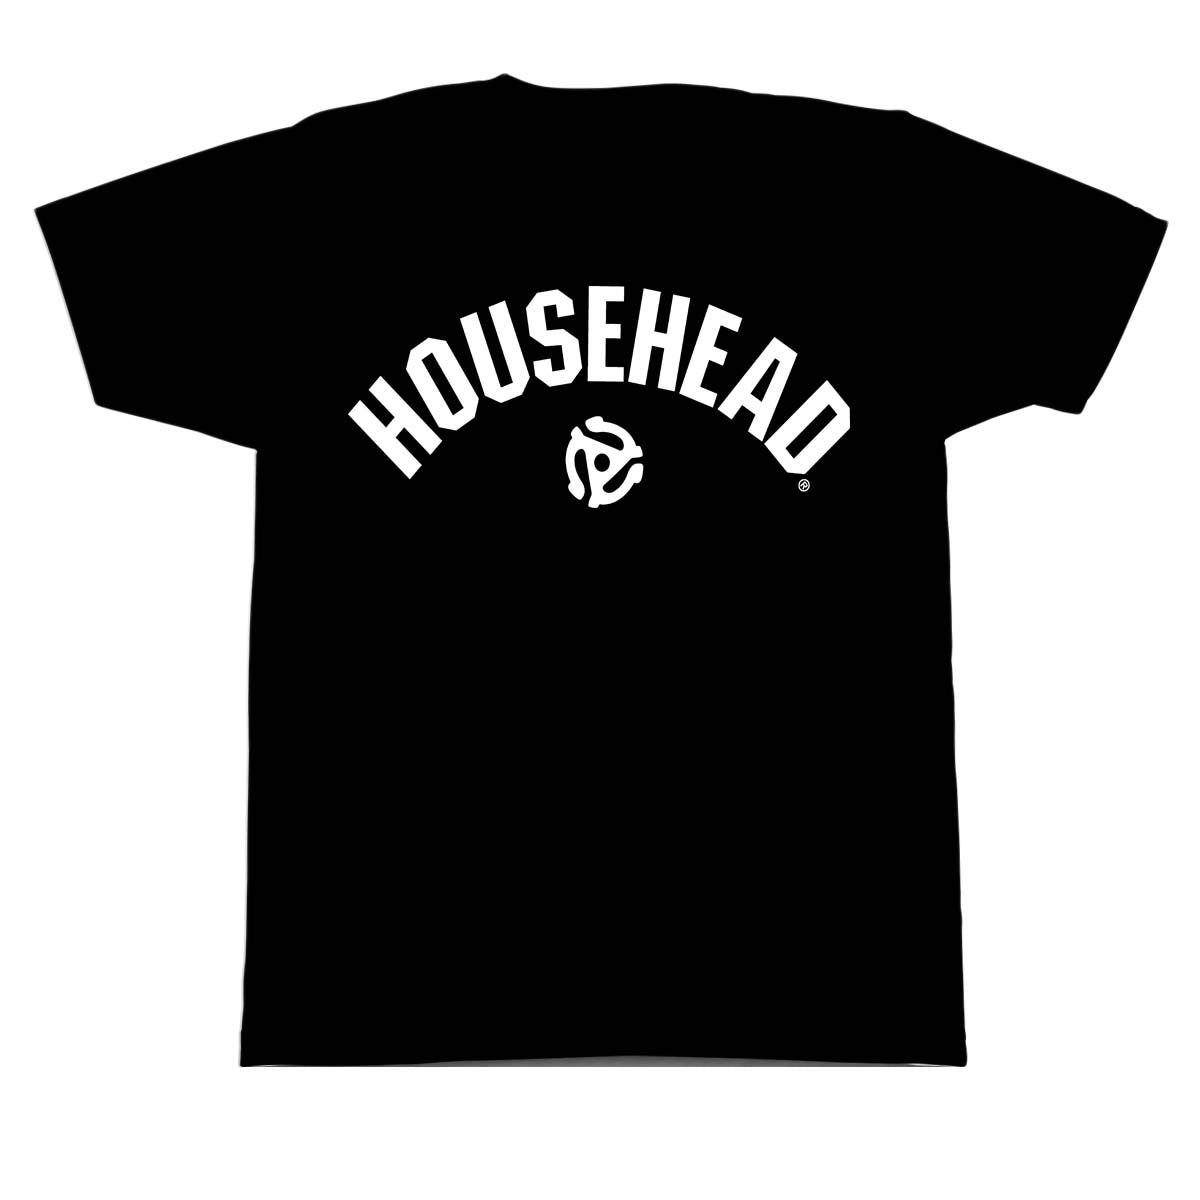 House Head T-Shirt